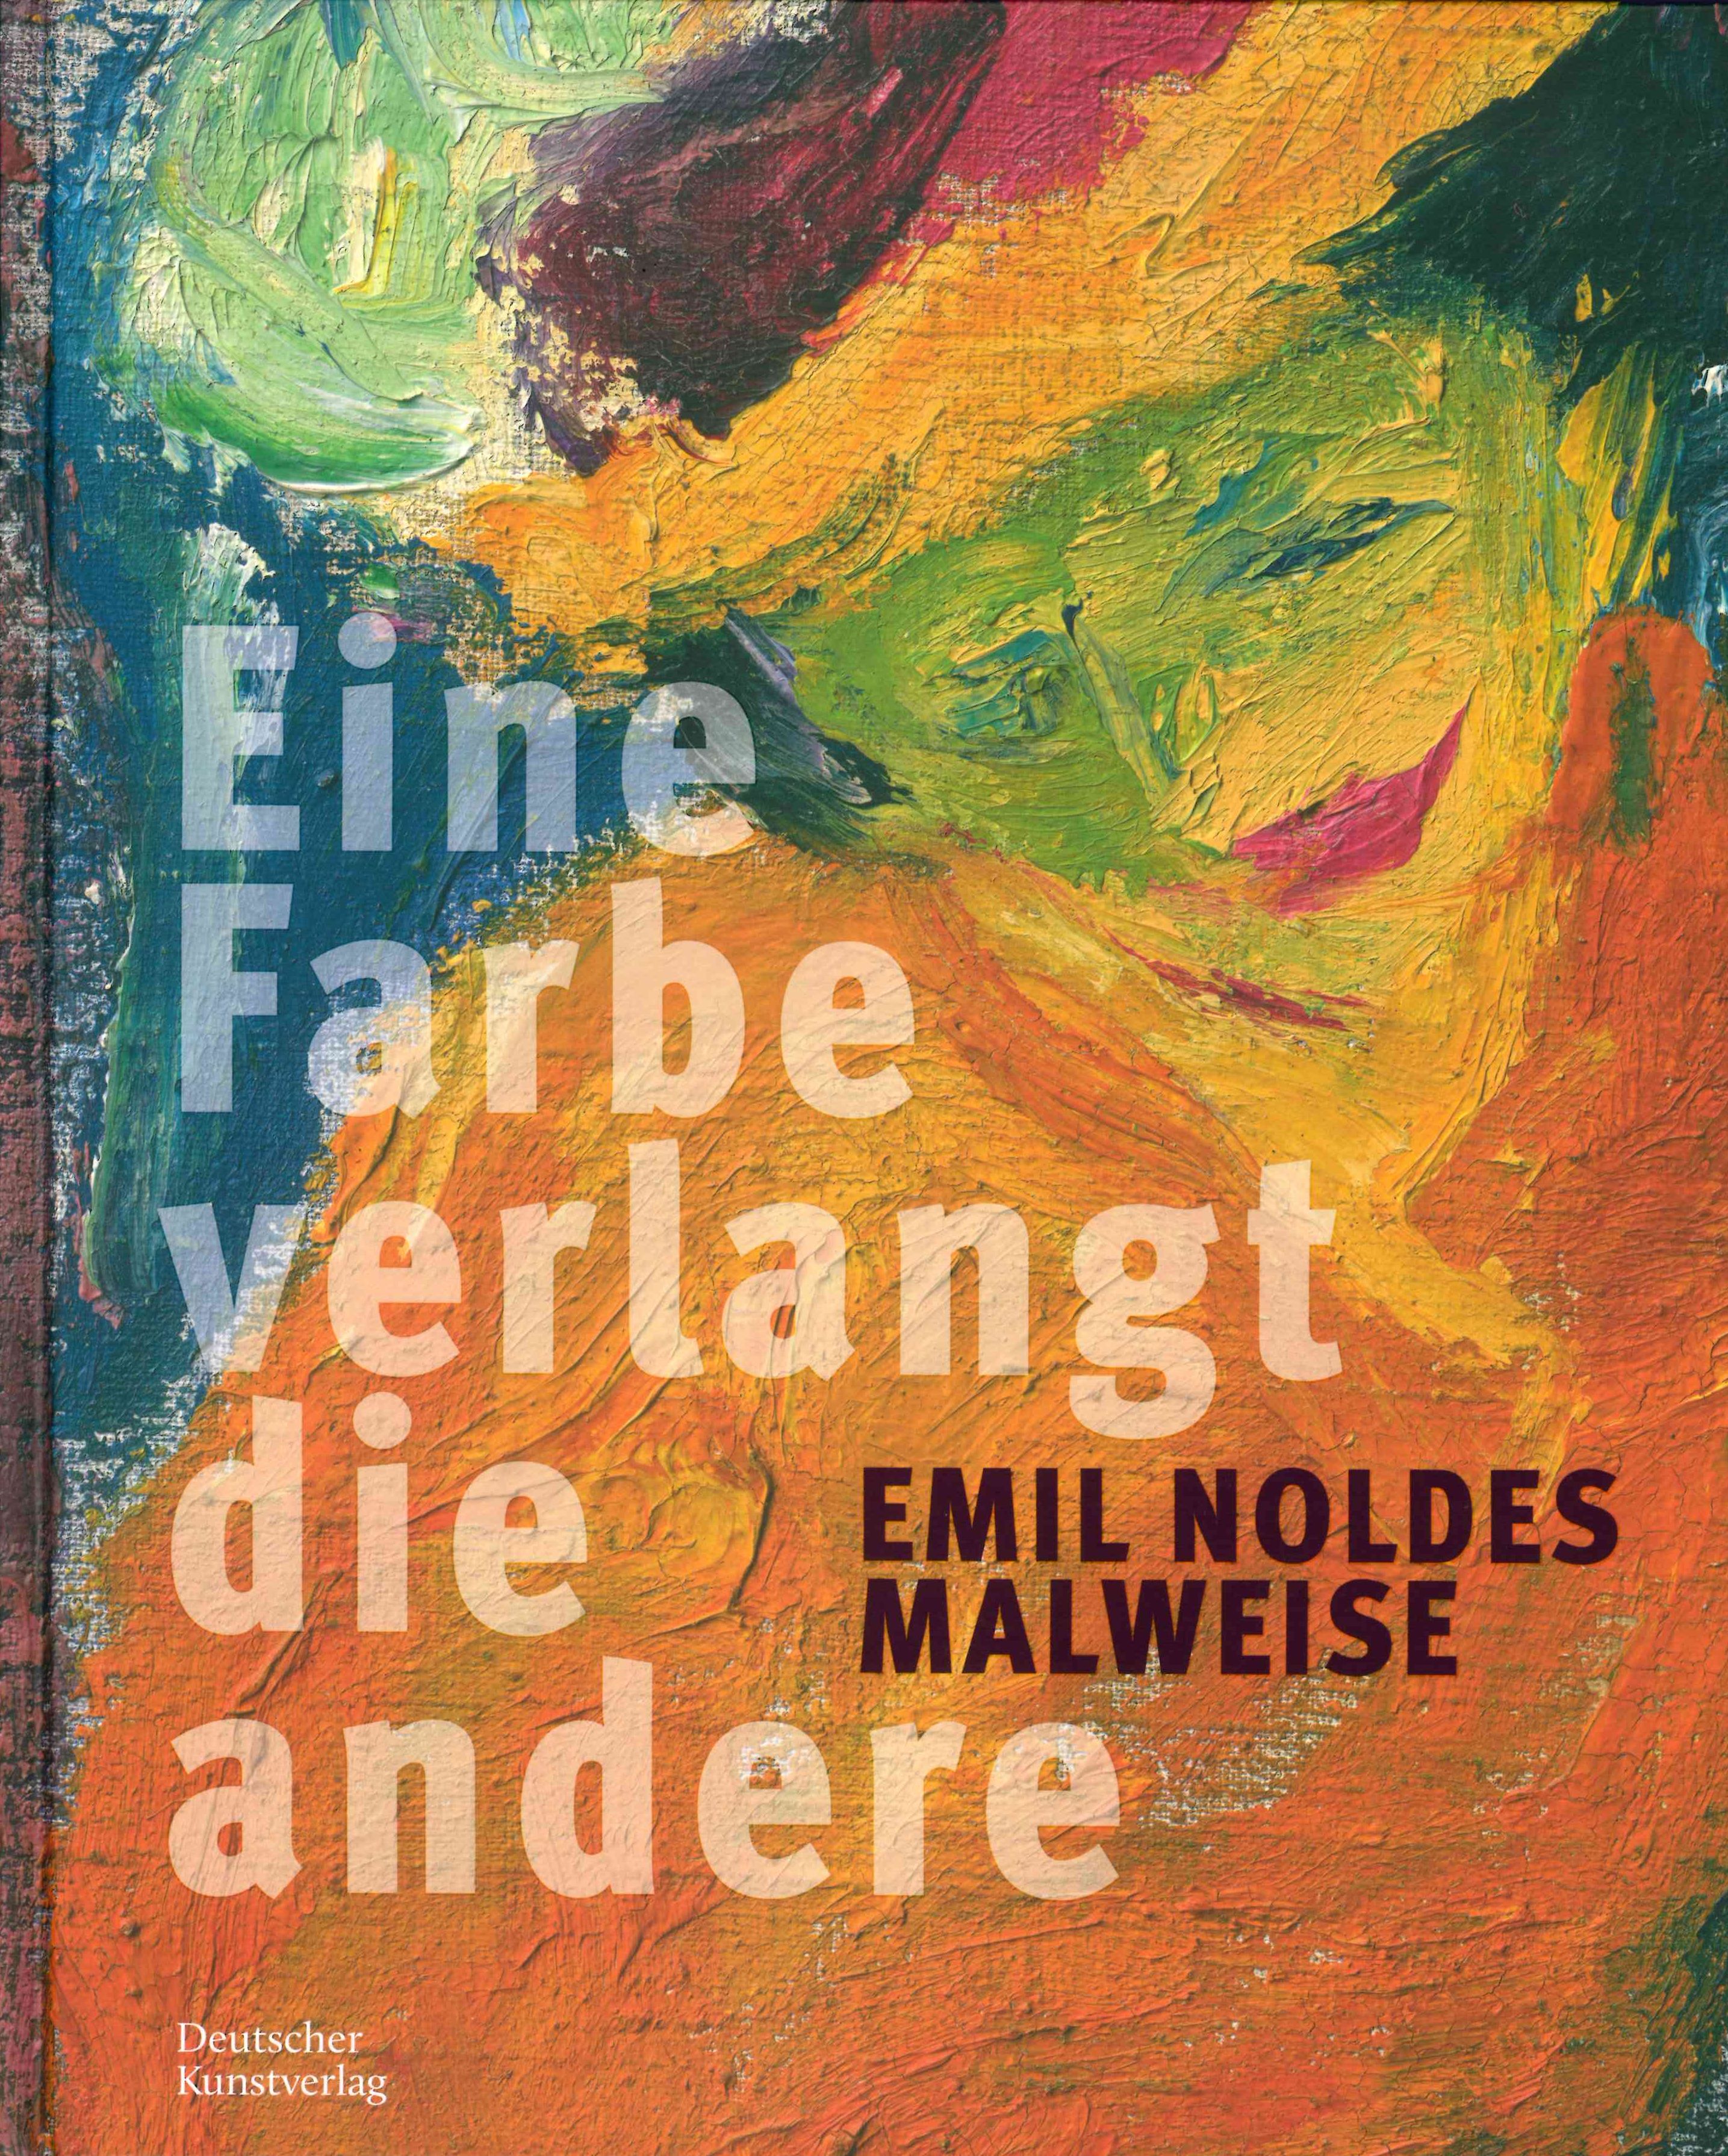 Emil Noldes Malweise "Eine Farbe verlangt die andere"